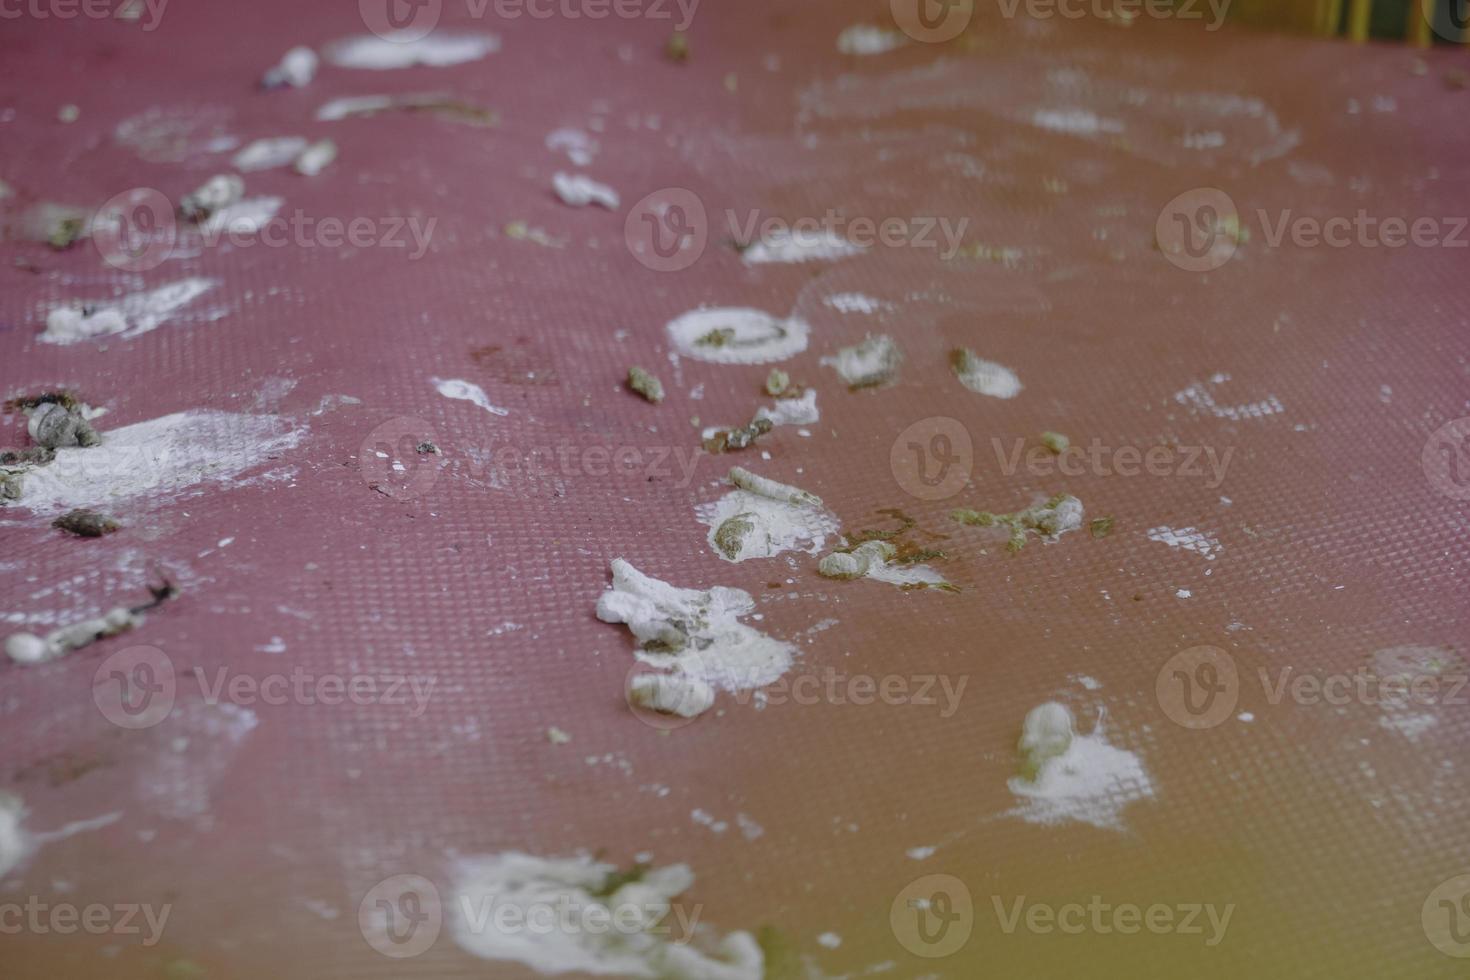 topp se. torkades fågel bajsar på en golv. smutsig och kan överföra sjukdomar skadlig till människor foto